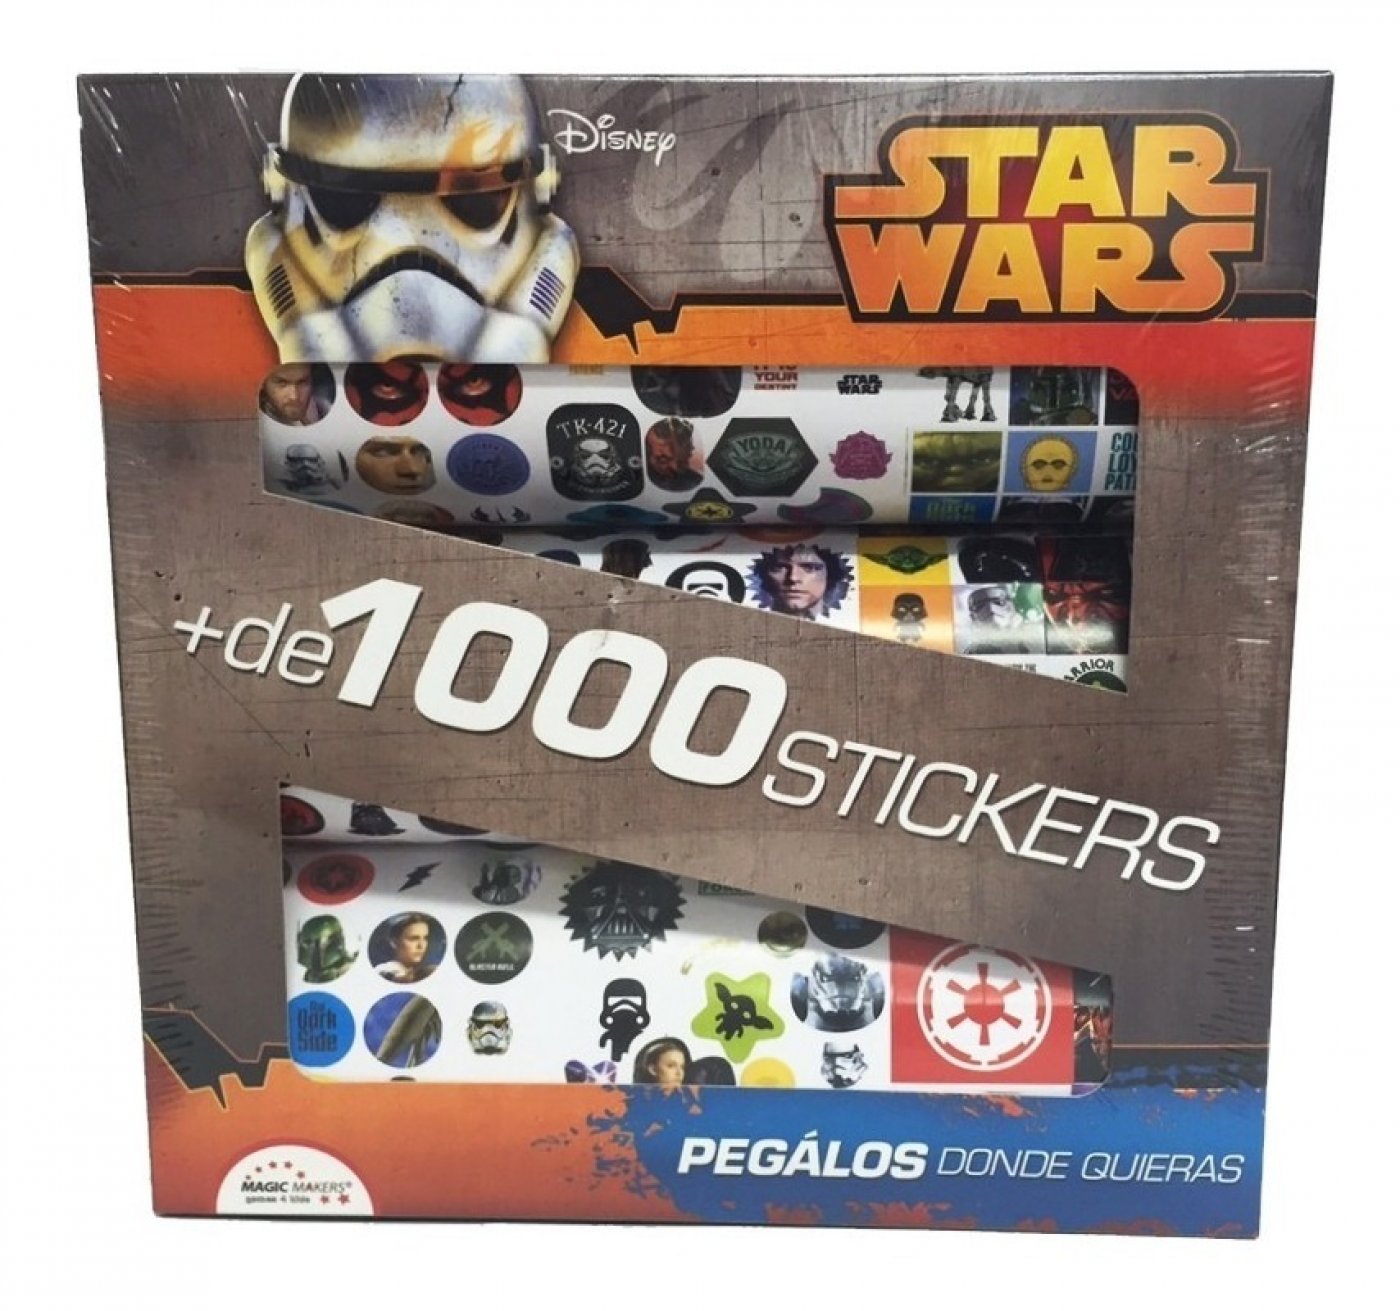 + 1000 Stickers de Star Wars - Pegalos donde Quieras!